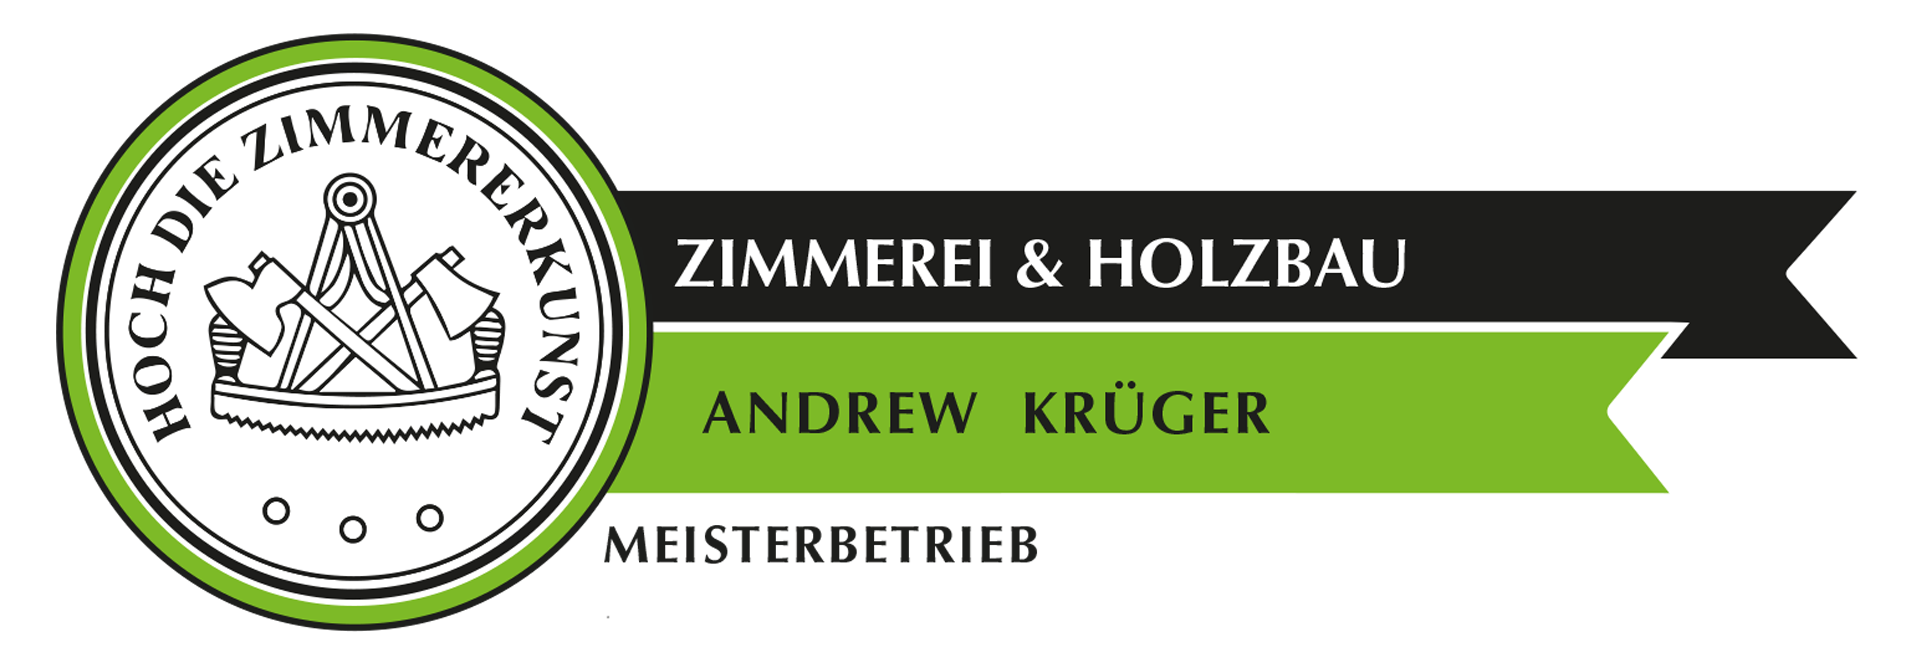 Zimmerei & Holzbau Krüger - Remscheid